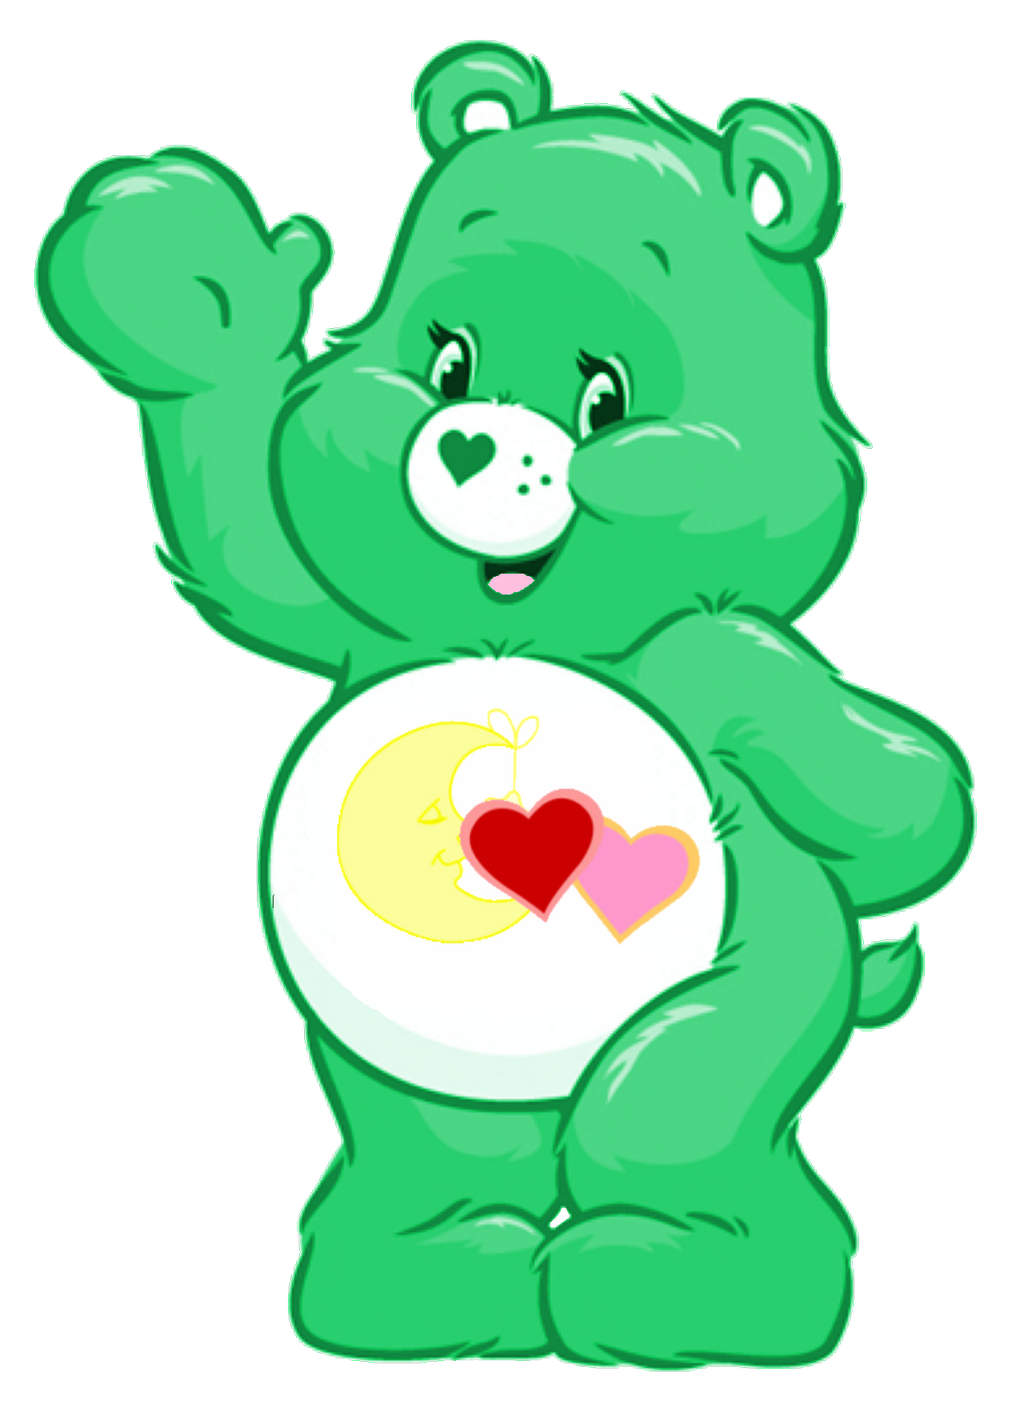 Care Bears: Comet Heart Bear 2D by Joshuat1306 on DeviantArt